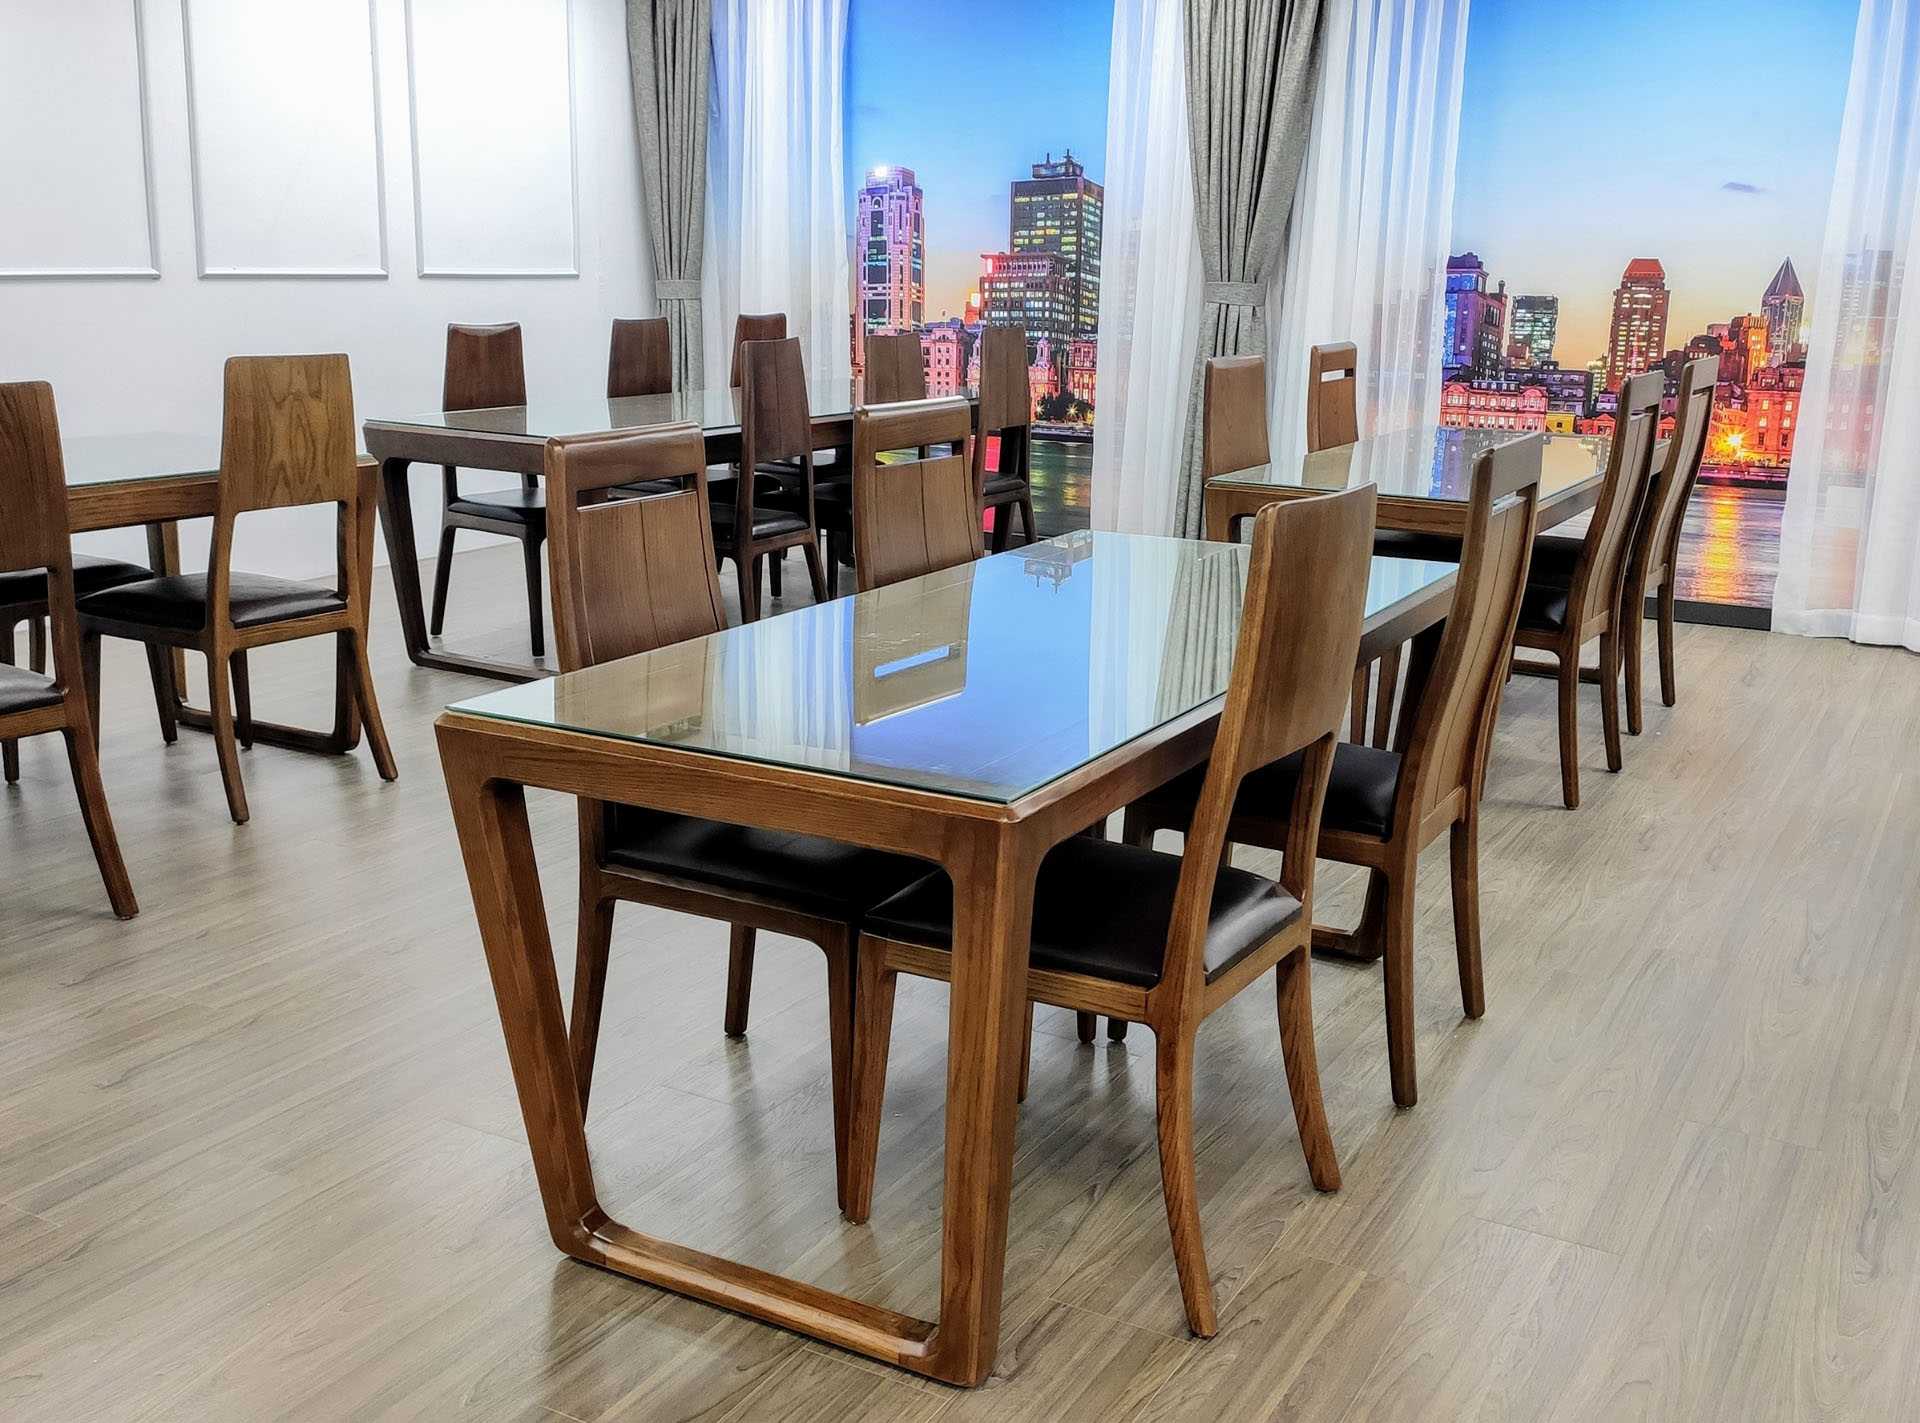 Bộ bàn ăn 8 ghế Matthias – bàn ăn gỗ sồi